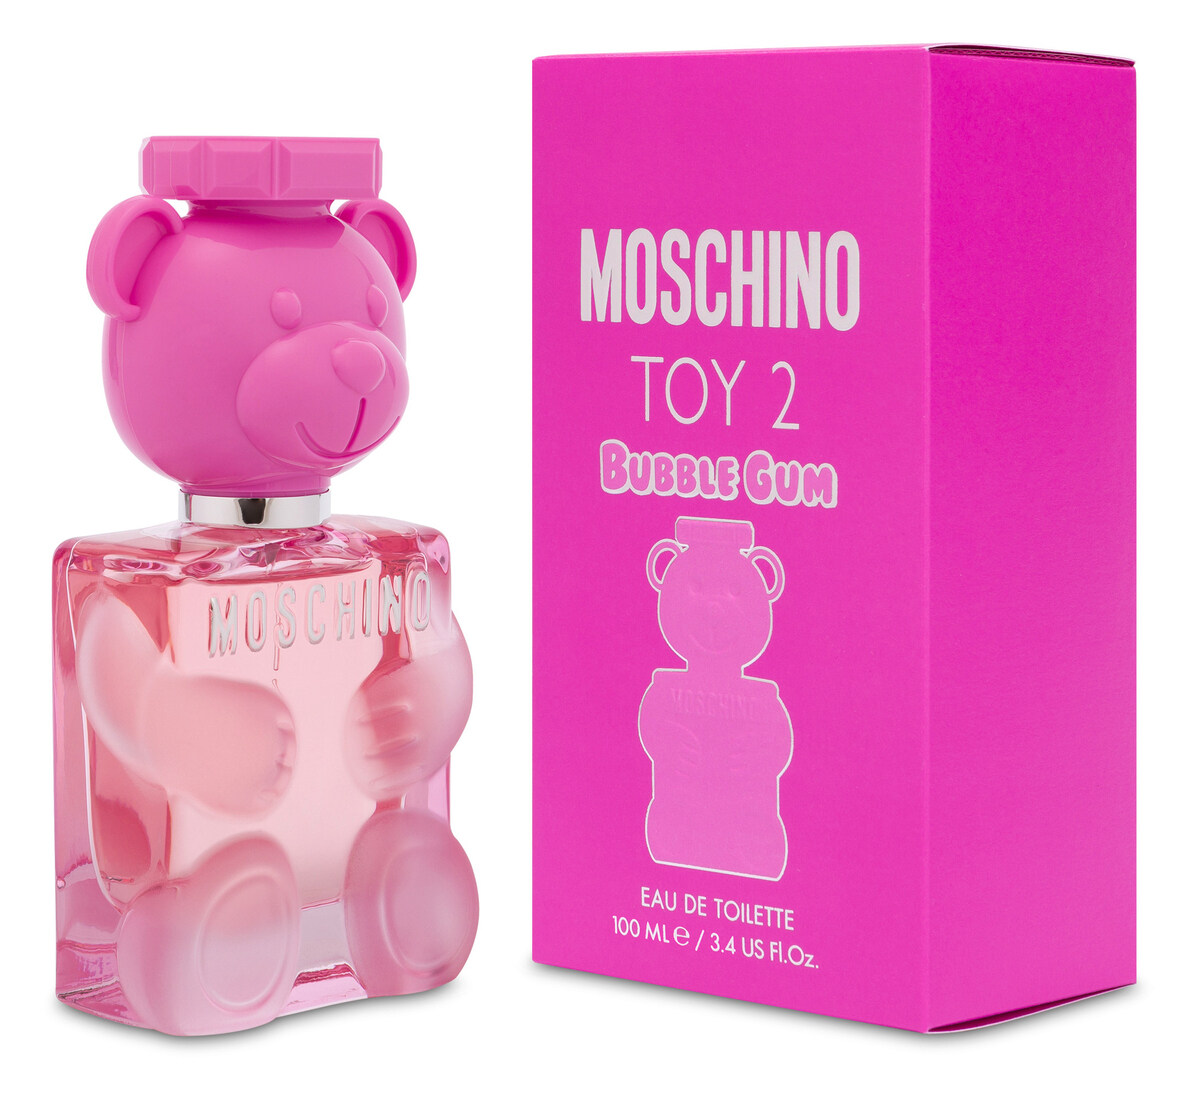 Toy 2 Bubble Gum by Moschino (Eau de Toilette) » Reviews & Perfume Facts